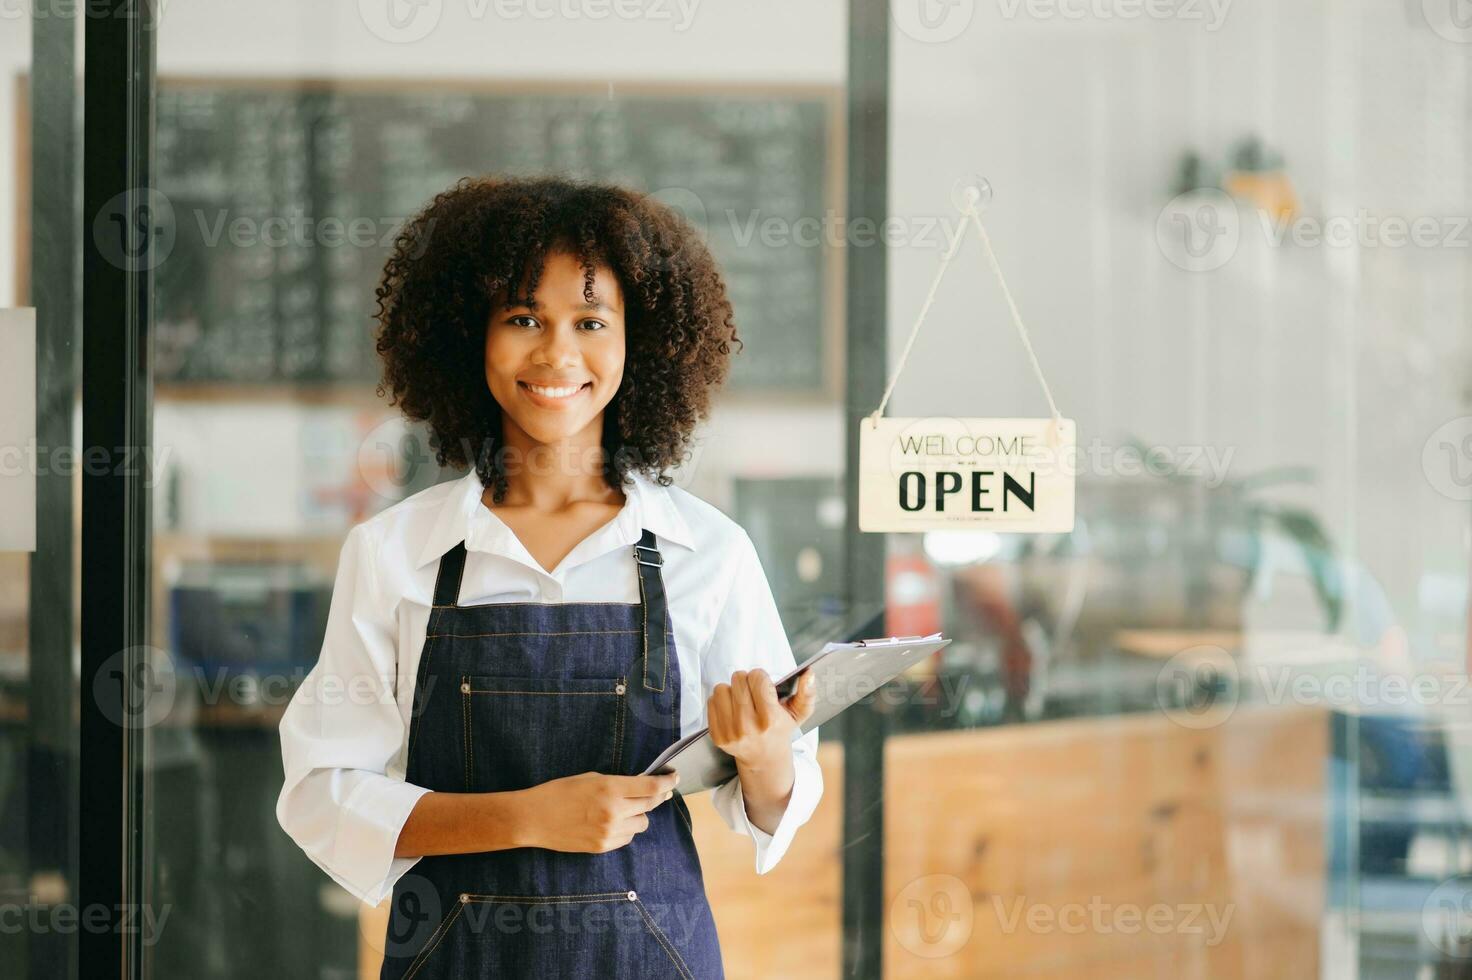 opstarten geslaagd klein bedrijf eigenaar mkb Afrikaanse vrouw staan met tablet in cafe restaurant. vrouw barista cafe baasje. foto